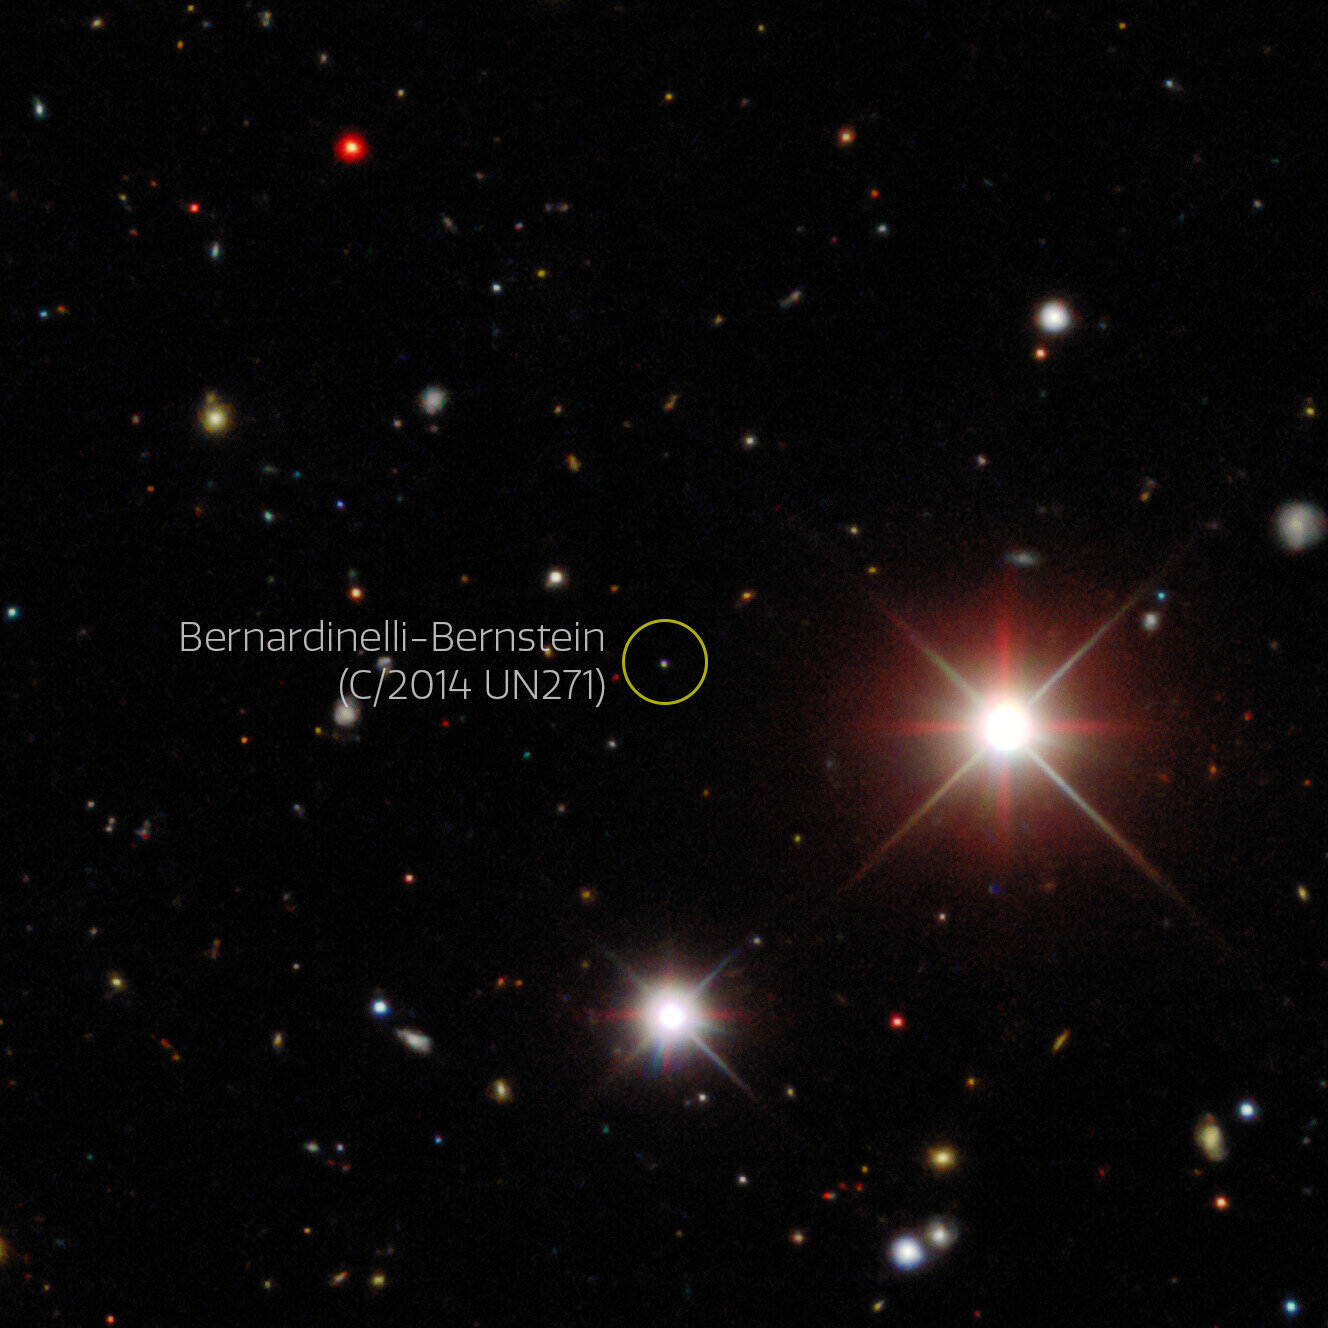 史上最大彗星C/2014 UN271 Bernardinelli-Bernstein在发现时天文学家误以为是矮行星